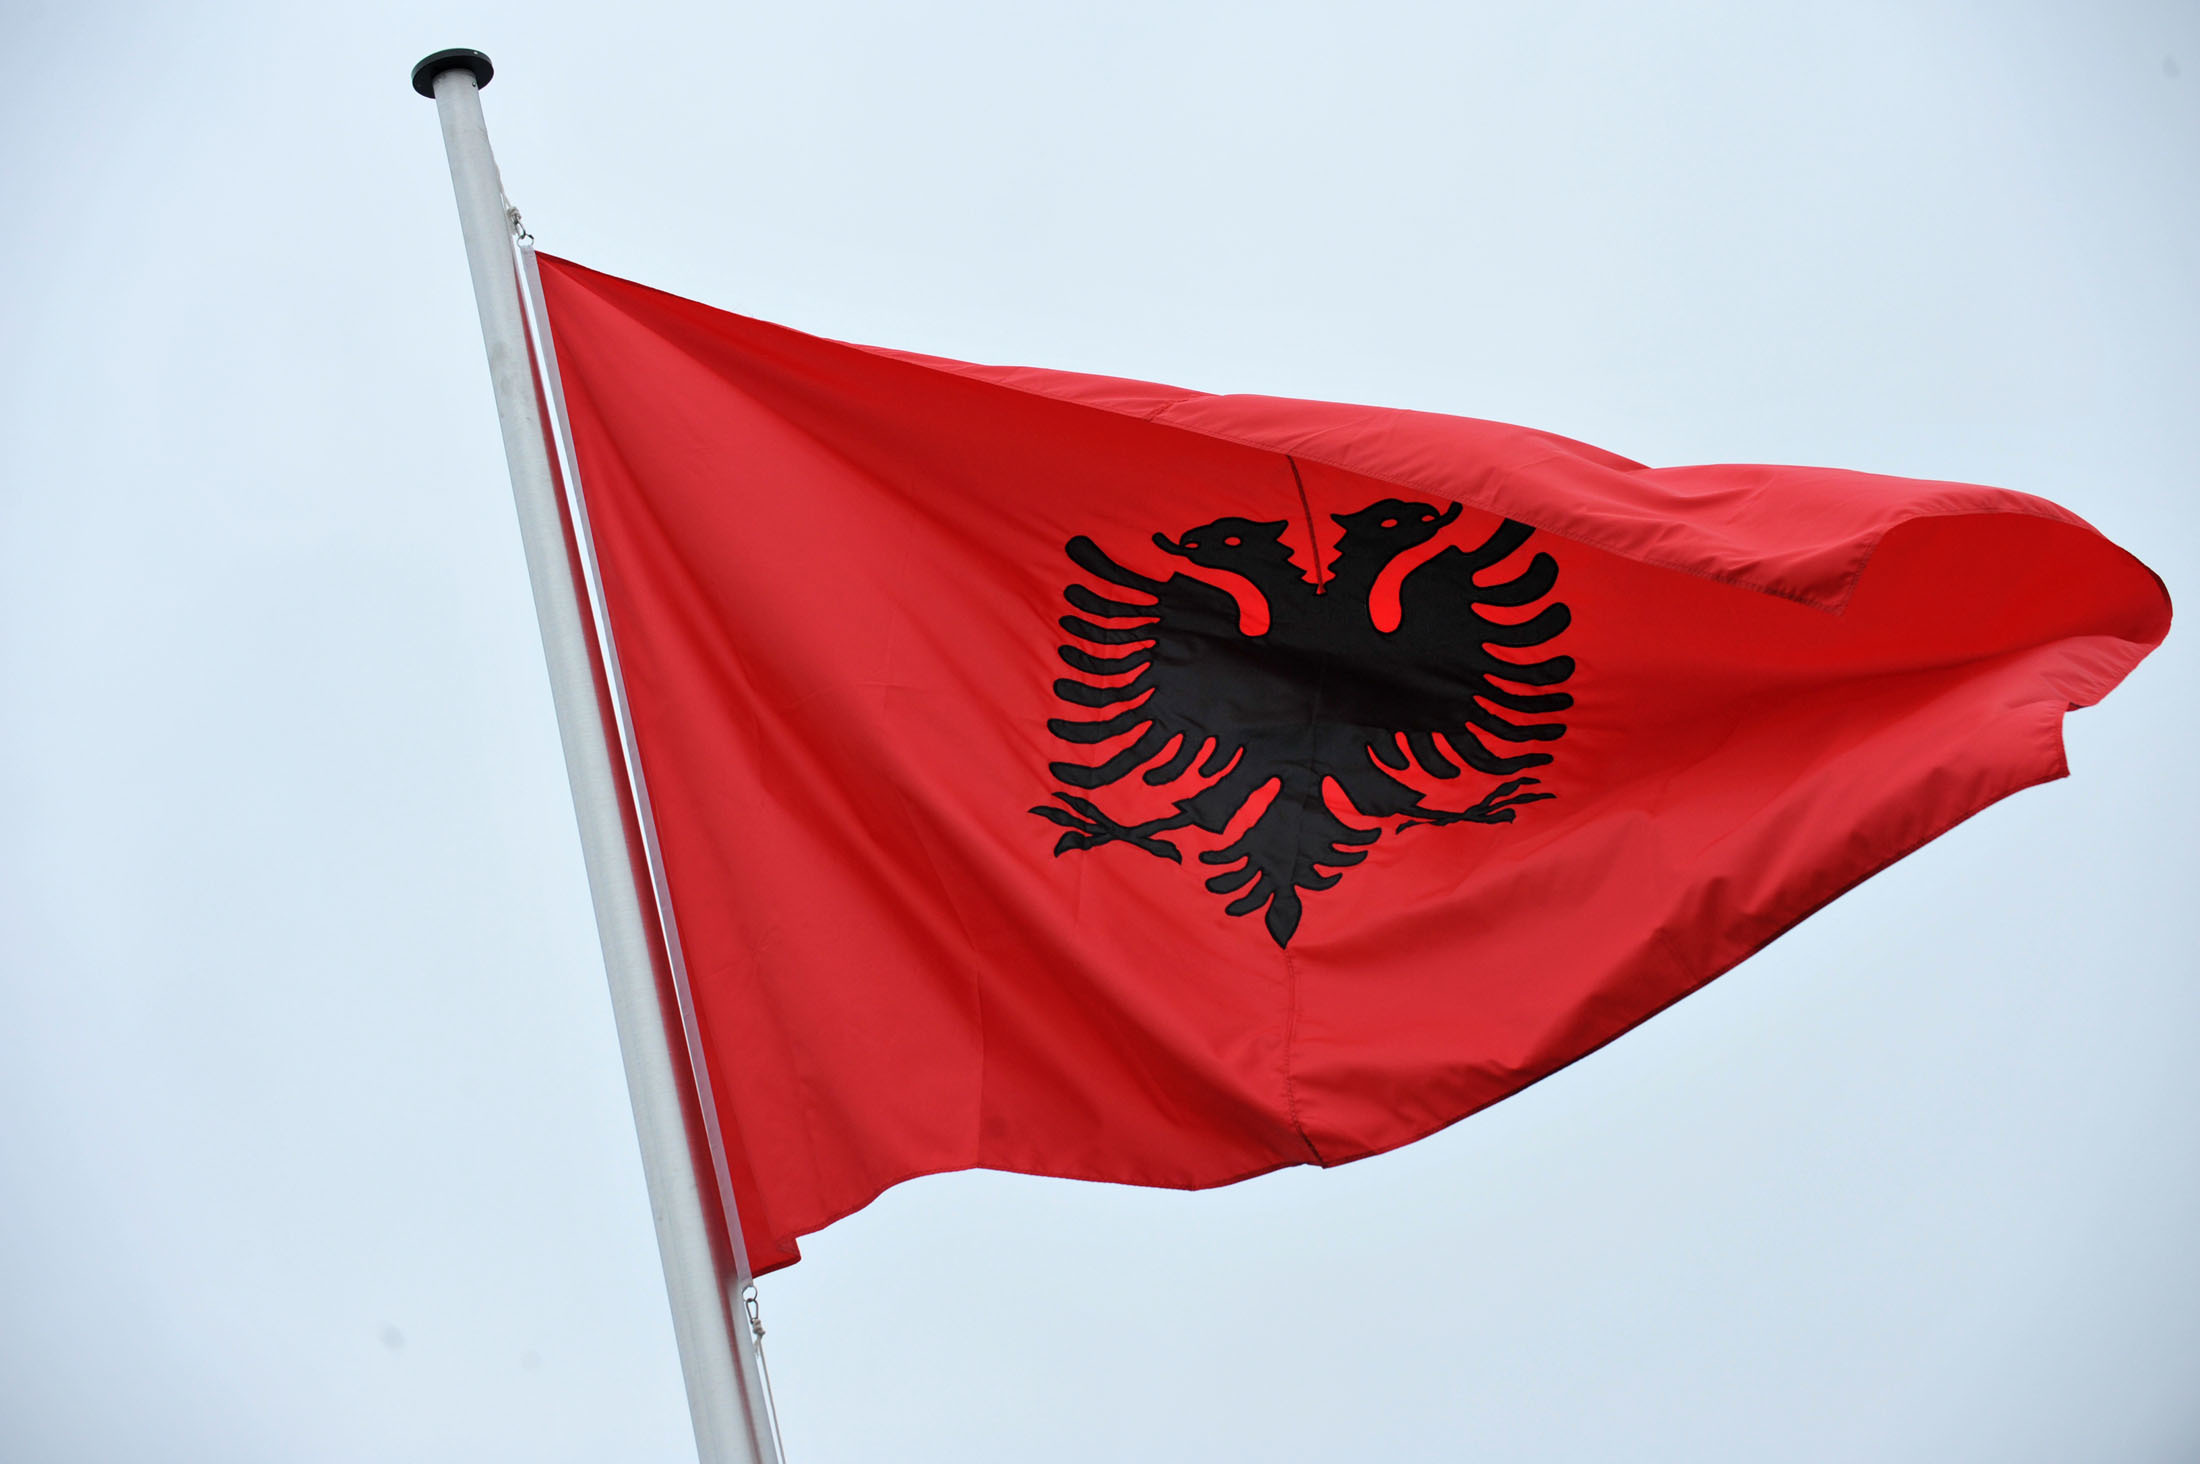 Το χαμηλότερο επίπεδο ανάπτυξης κατέγραψε η αλβανική οικονομία το 2013